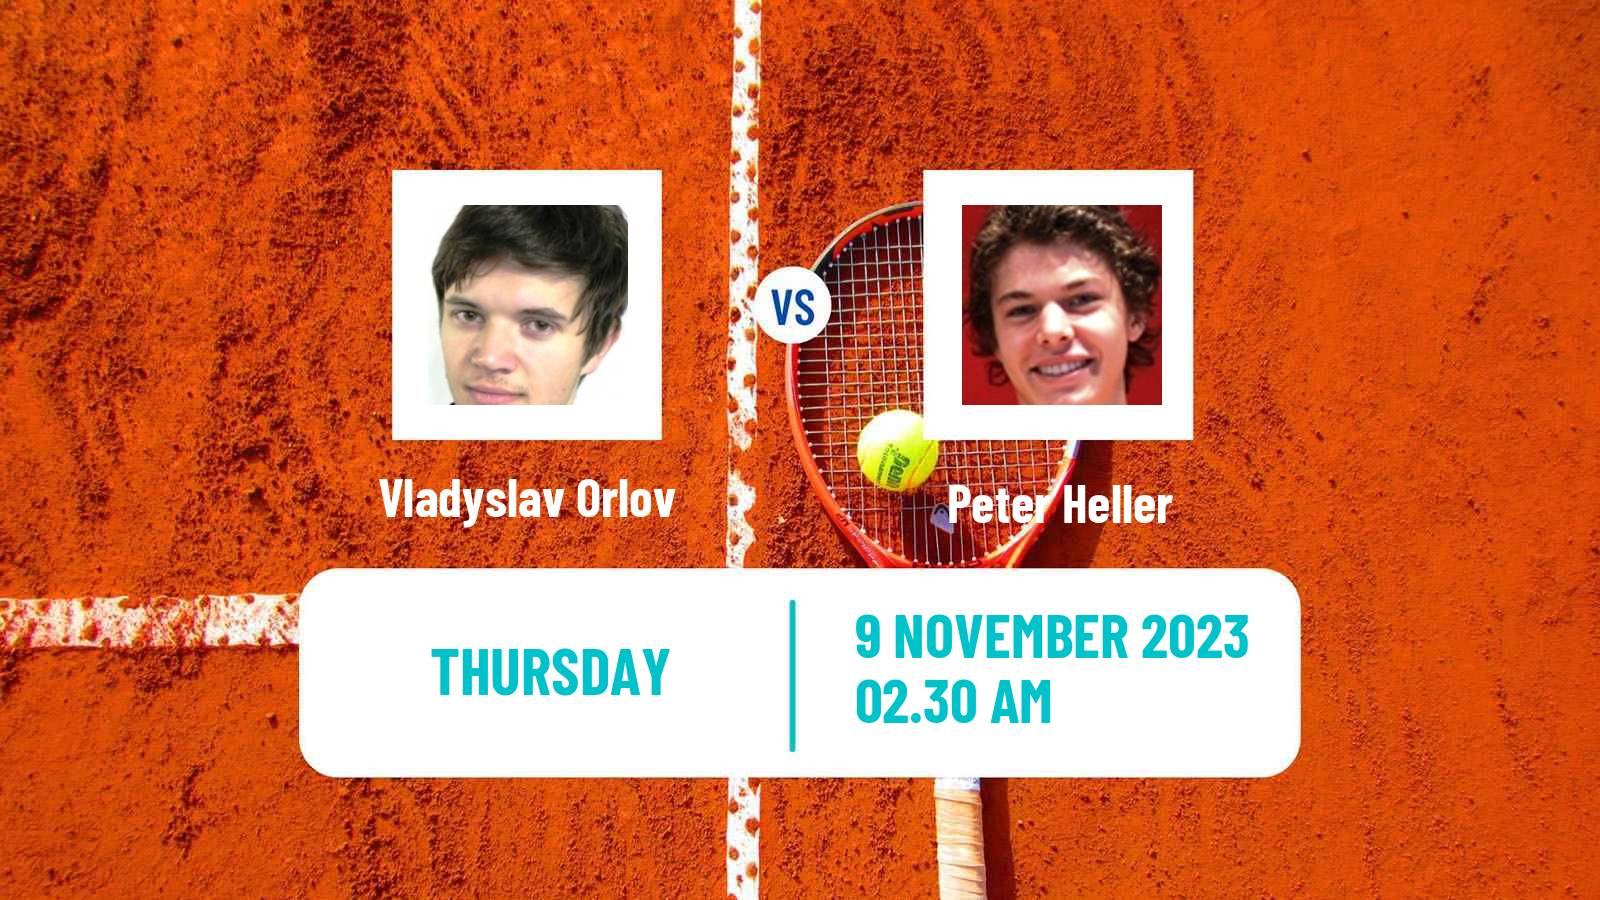 Tennis ITF M25 Heraklion 2 Men Vladyslav Orlov - Peter Heller